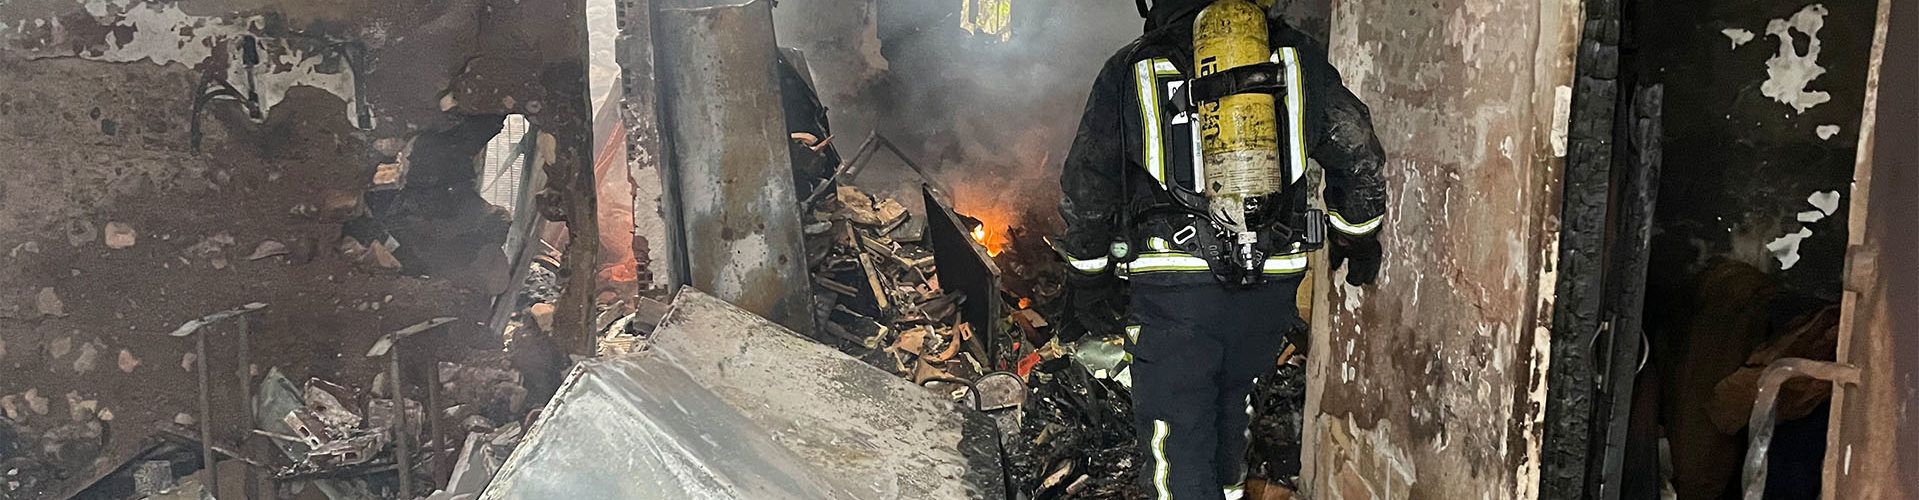 Una persona fallecida en el incendio de una vivienda en Cabanes